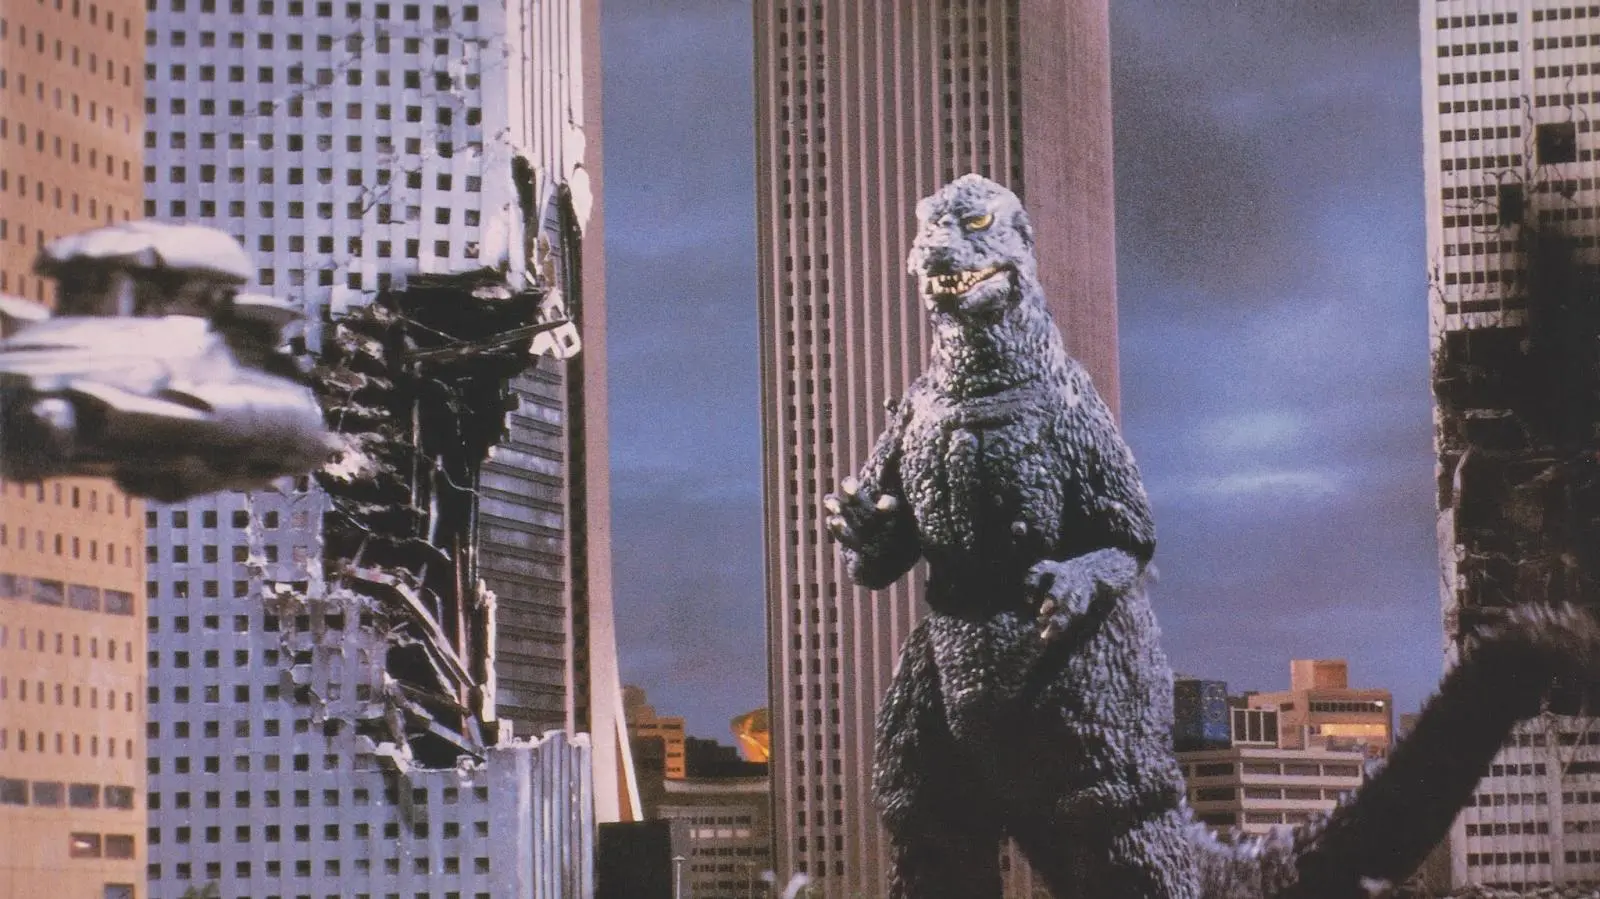 El retorno de Godzilla_peliplat